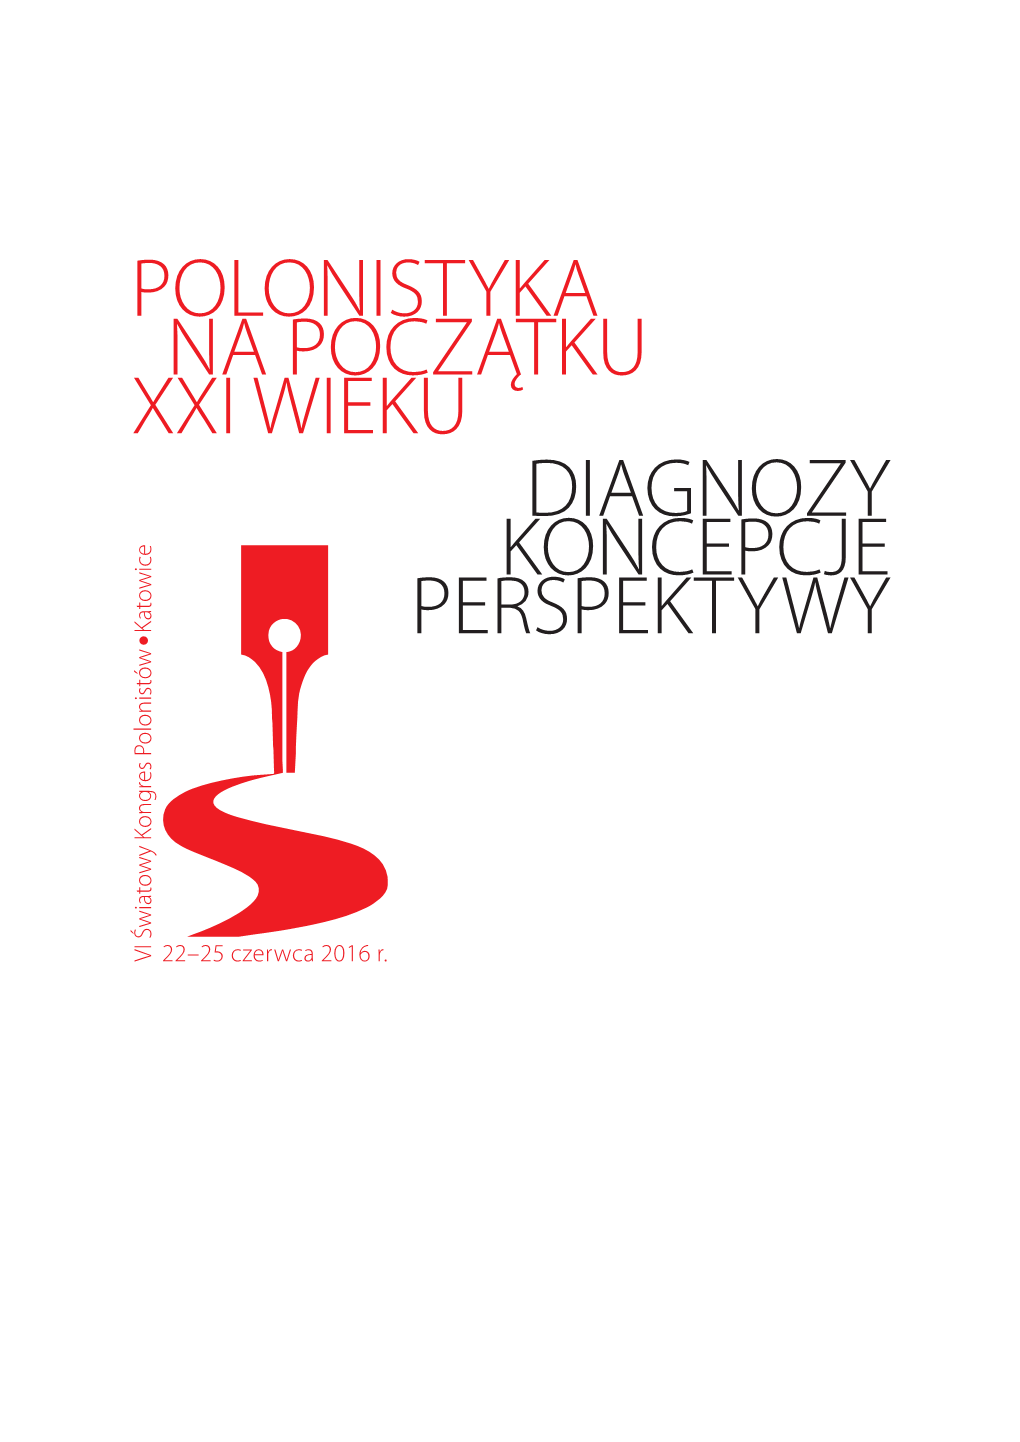 Polonistyka Na Początku Xxi Wieku Diagnozy Koncepcje Perspektywy